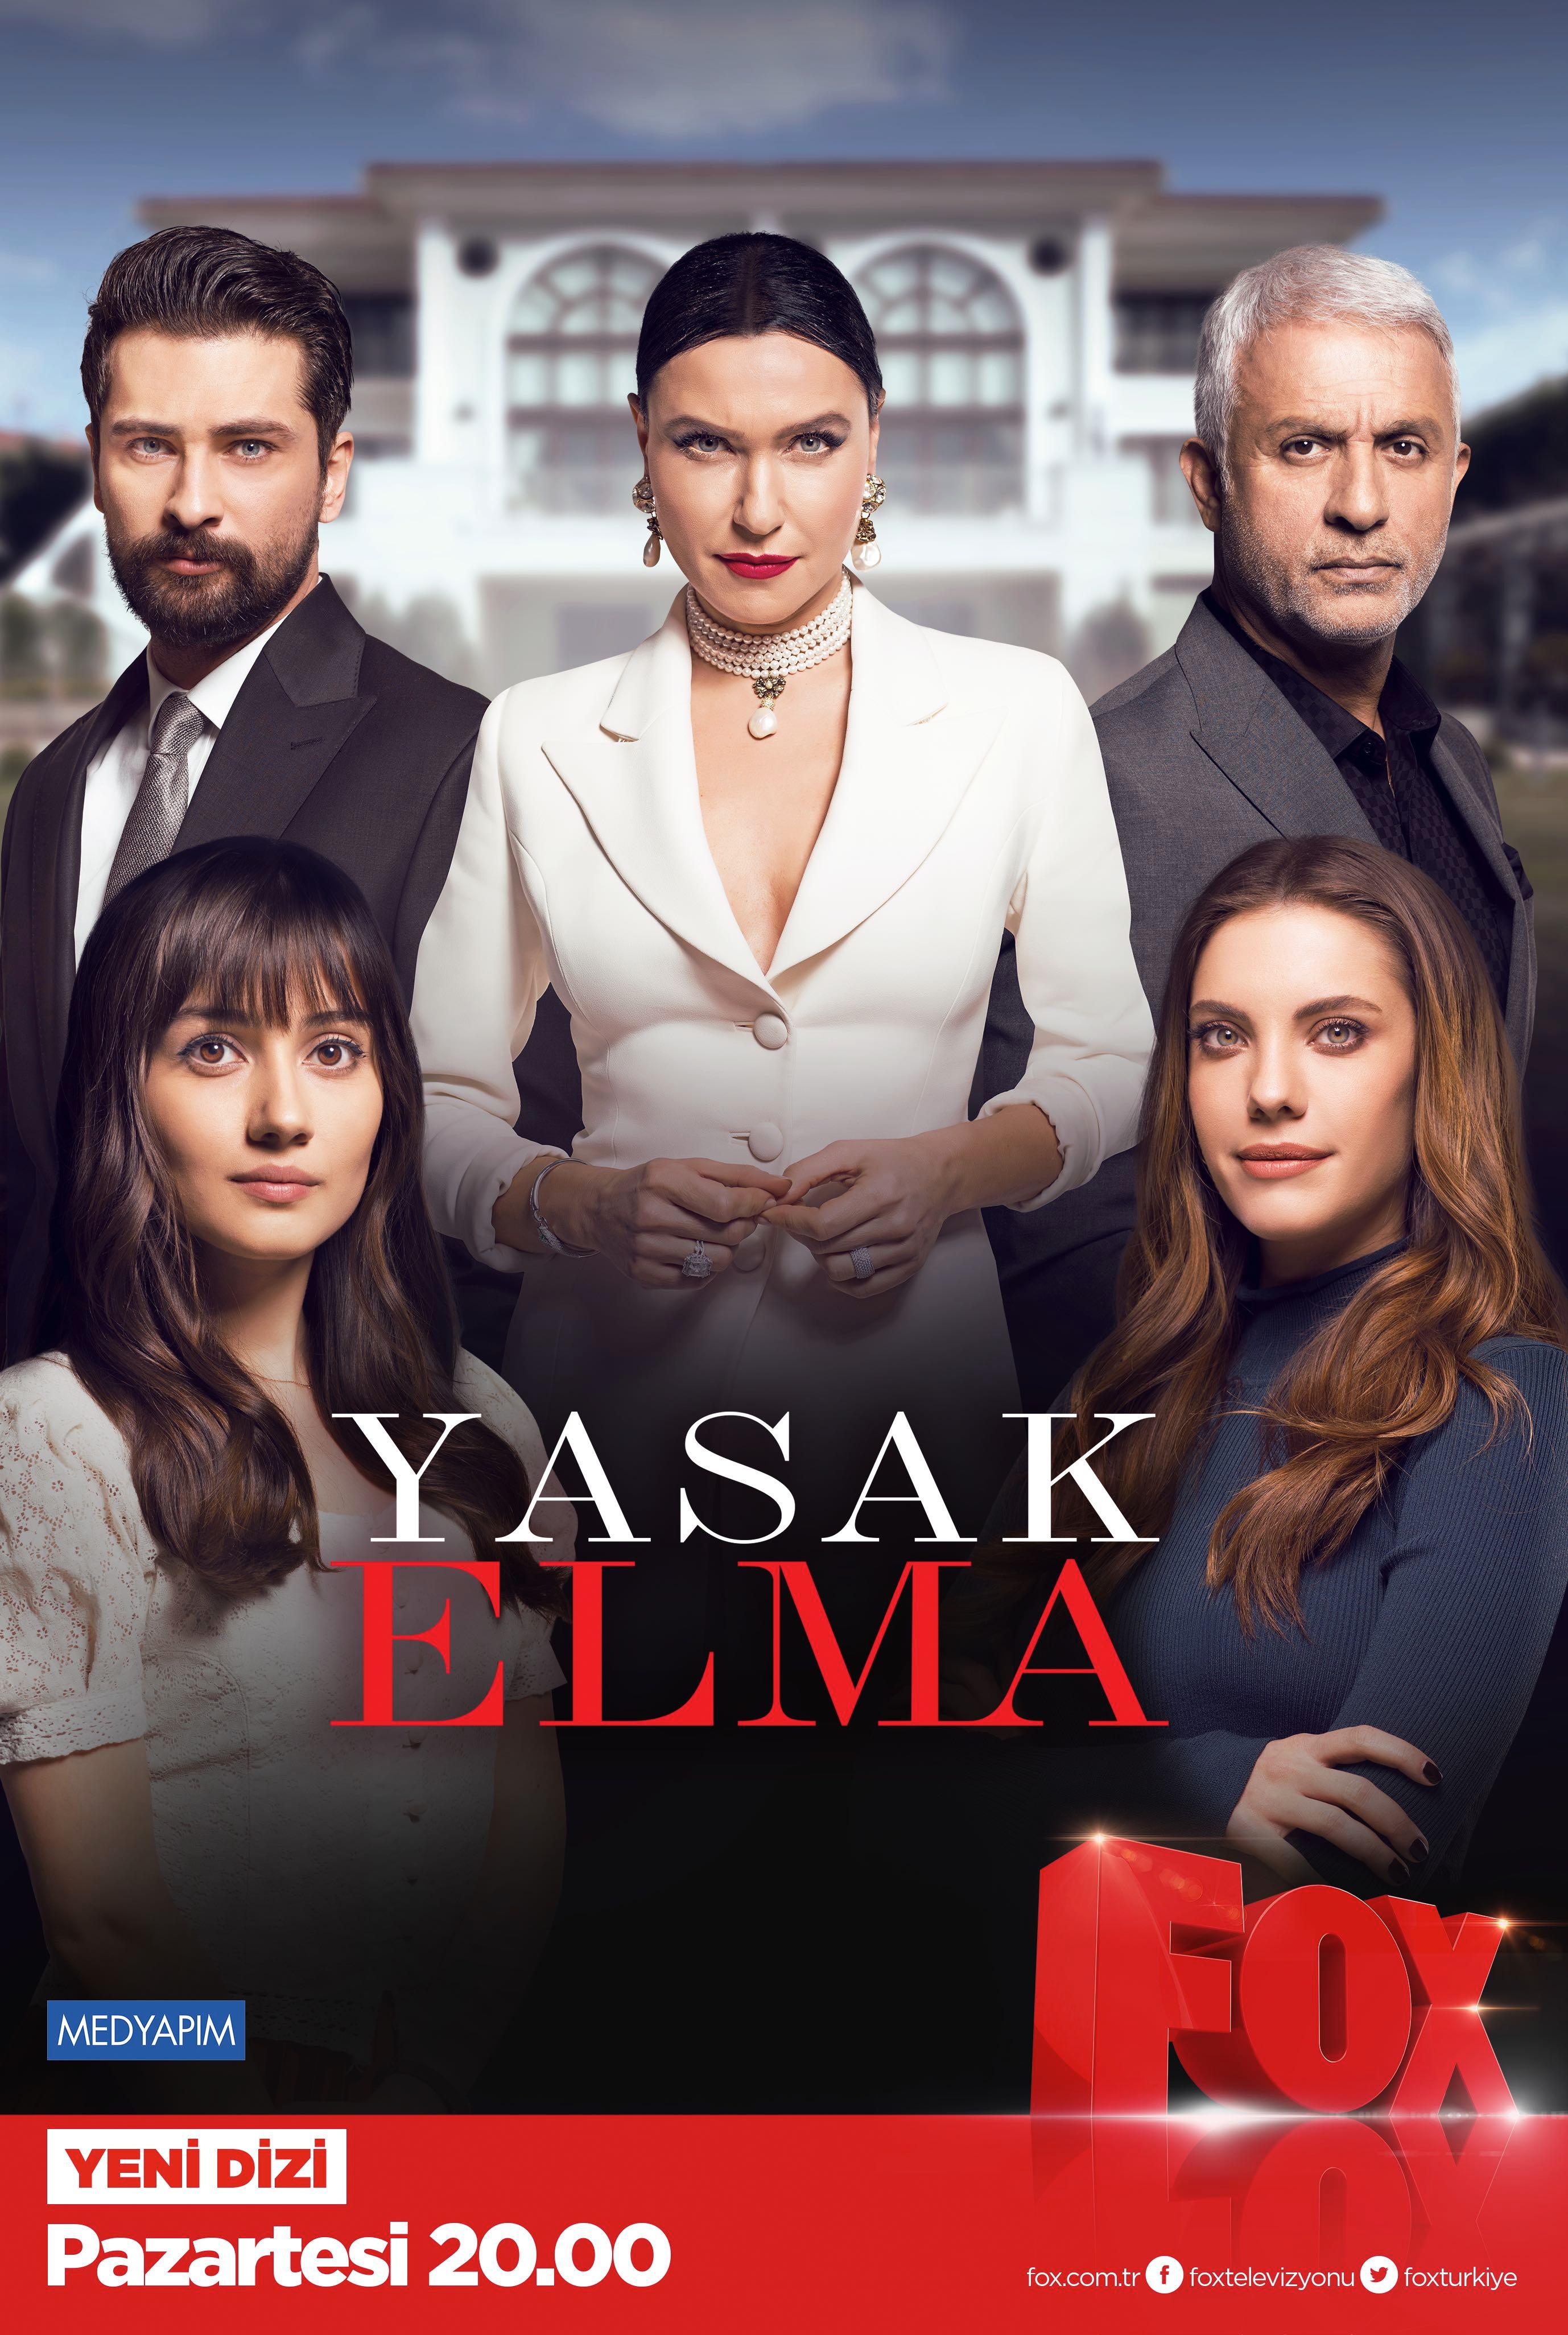 أفضل المسلسلات التركية الرومانسية في آخر 5 سنوات - yasak elma